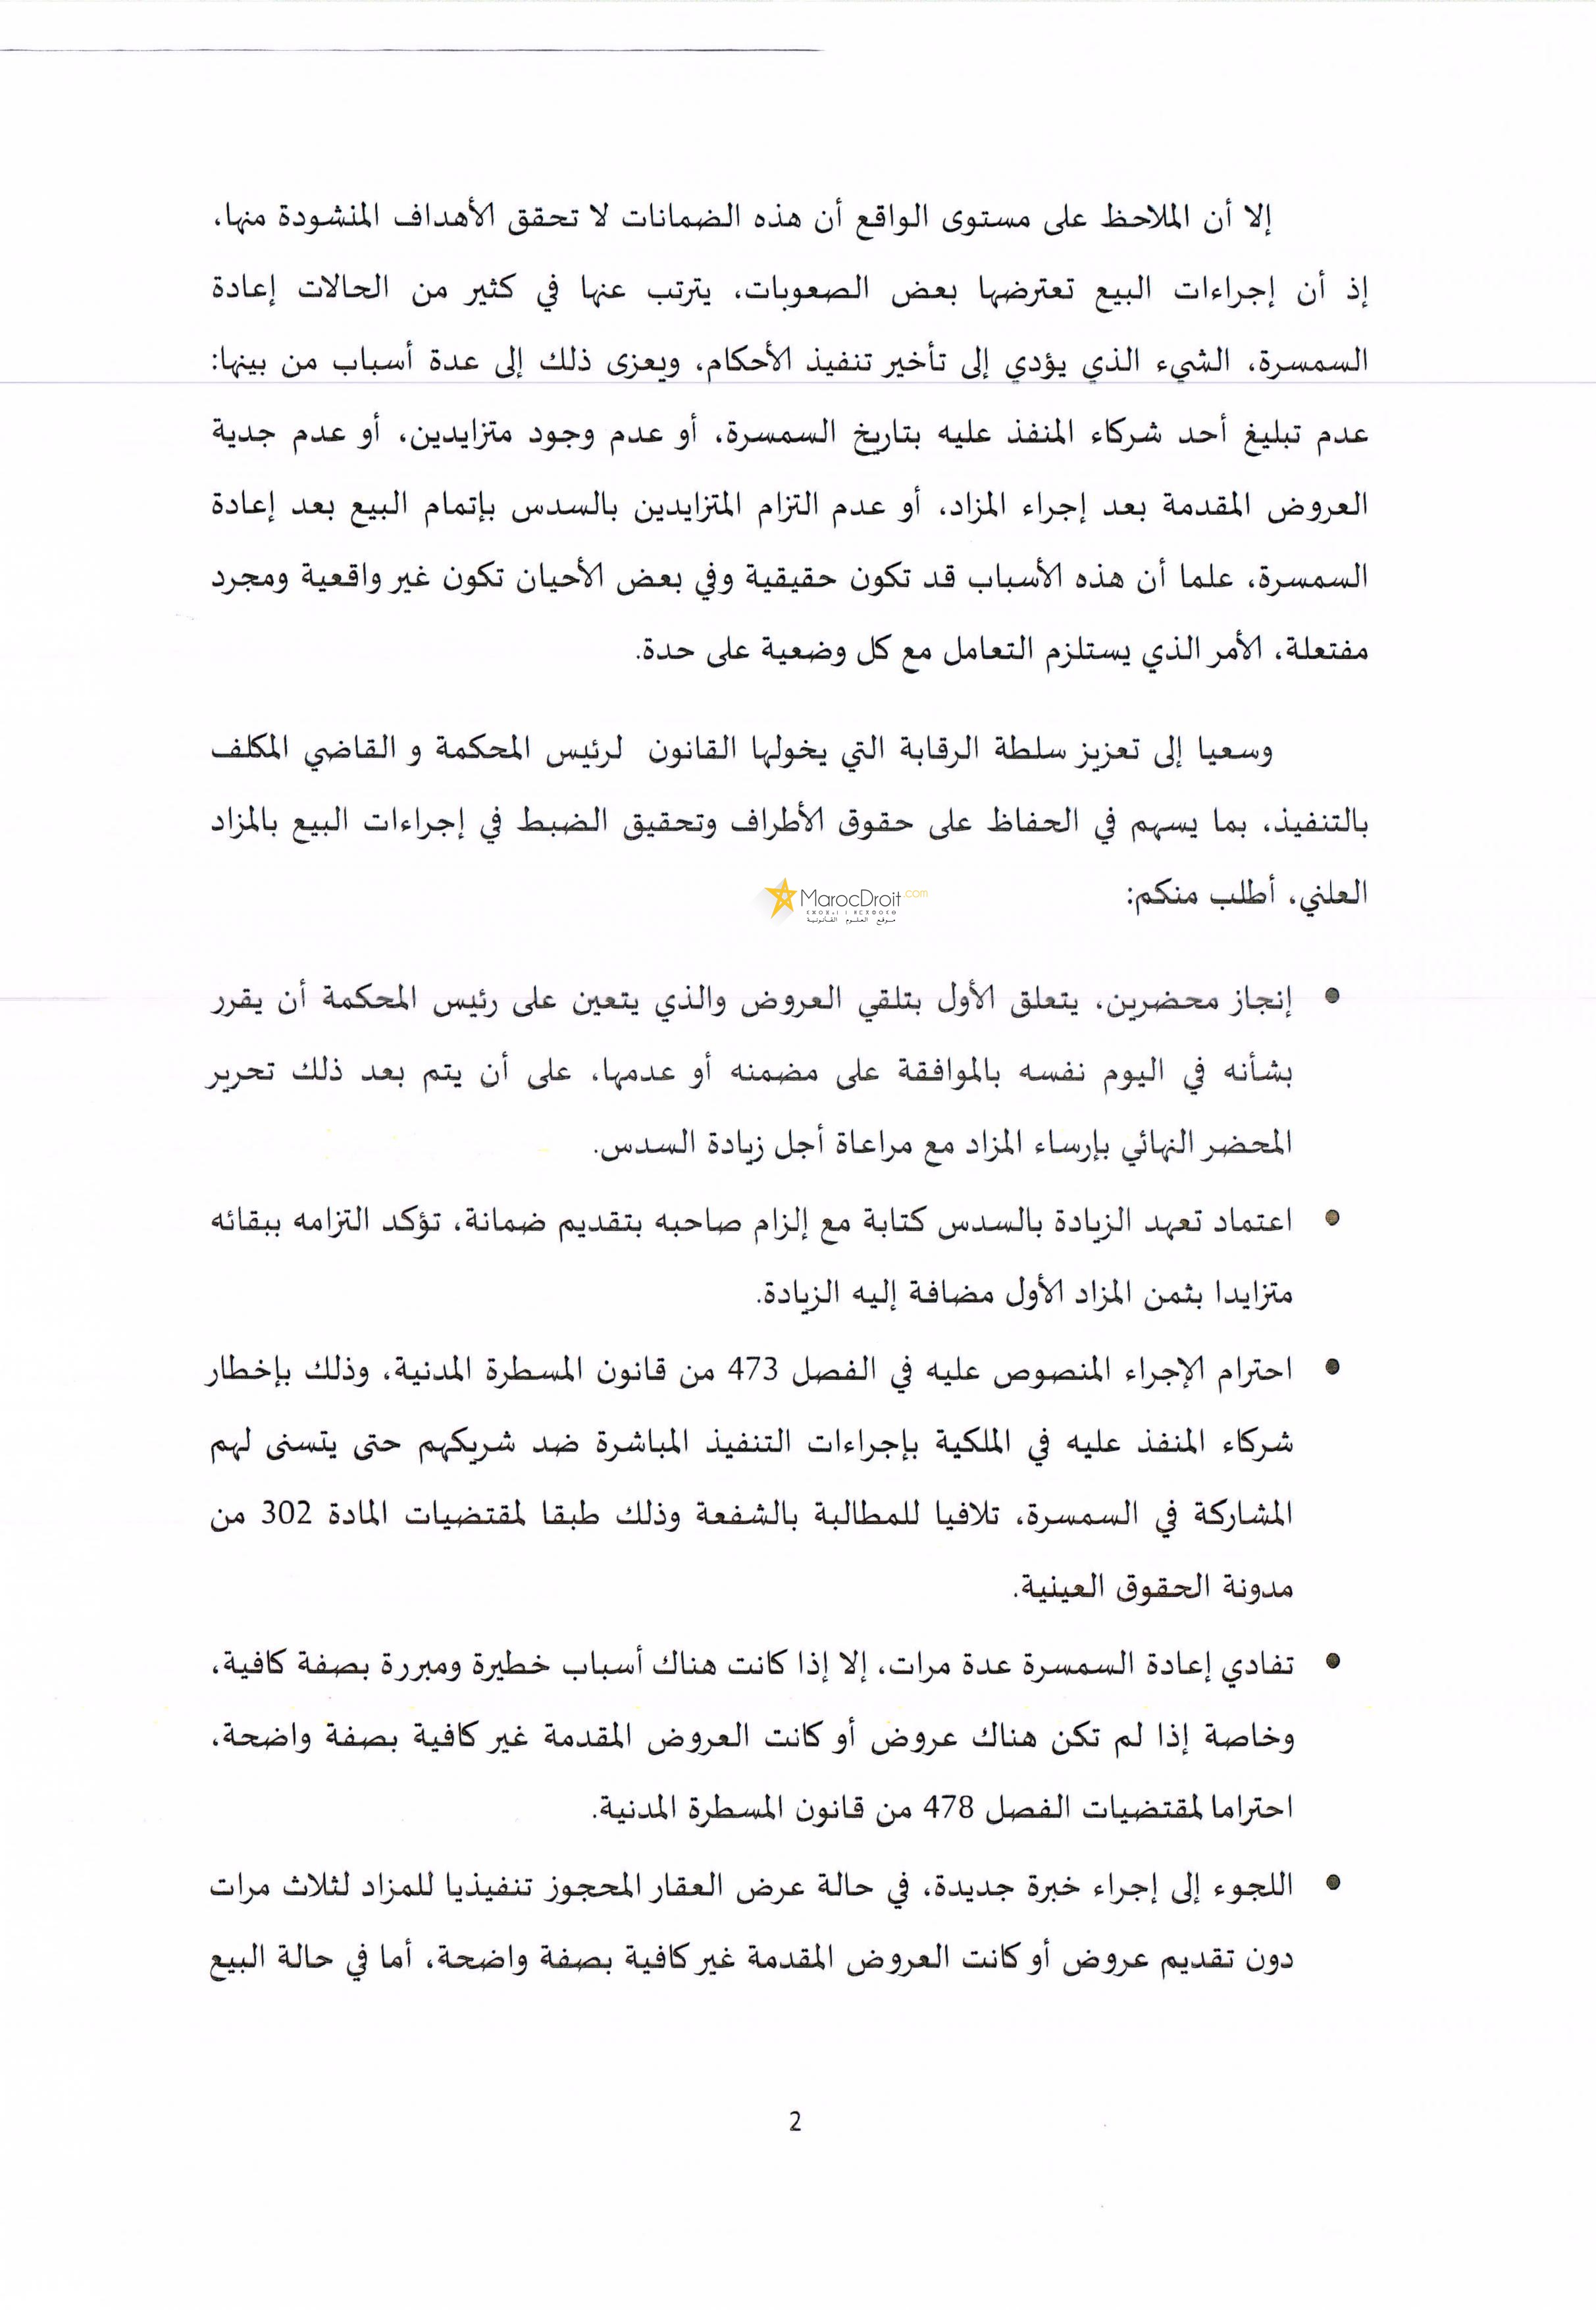 المنشور الصادر عن وزير العدل والحريات بتاريخ 17 يناير 2017 المتعلق بمسطرة البيع بالمزاد العلني